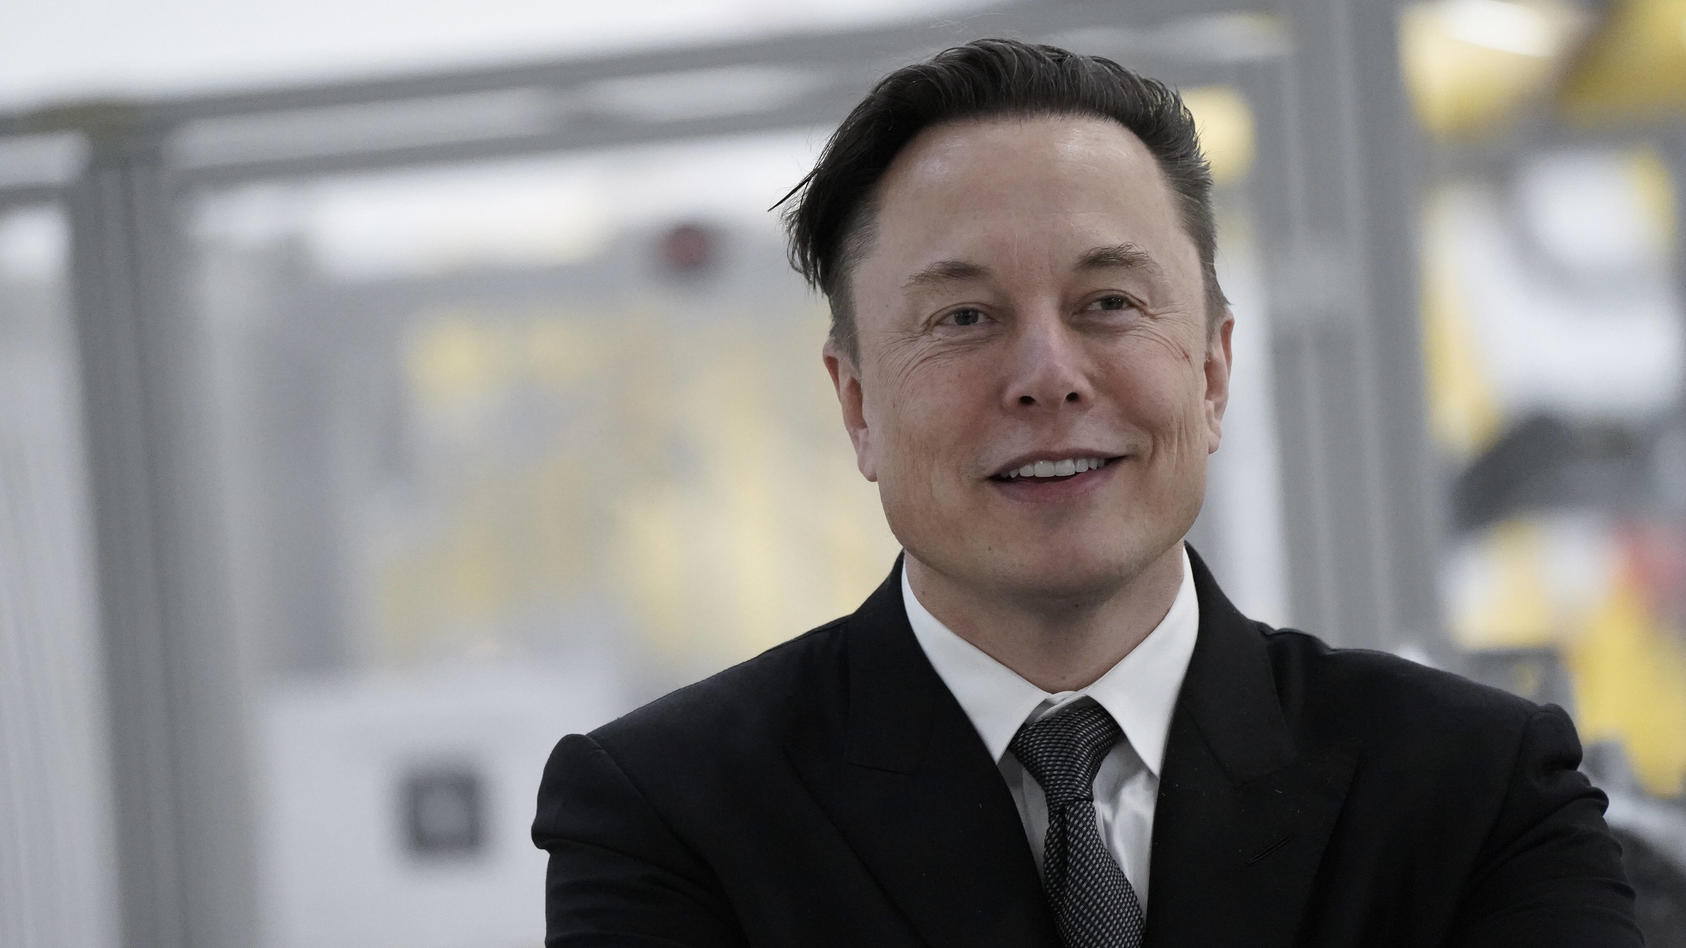 Elon Musk schickte alles Nötige für die Starlink-Verbindung in die Ukraine, um dort eine Internetverbindung zu ermöglichen. Auf diese Weise gibt es auch mehr Möglichkeiten für die Verteidigung.